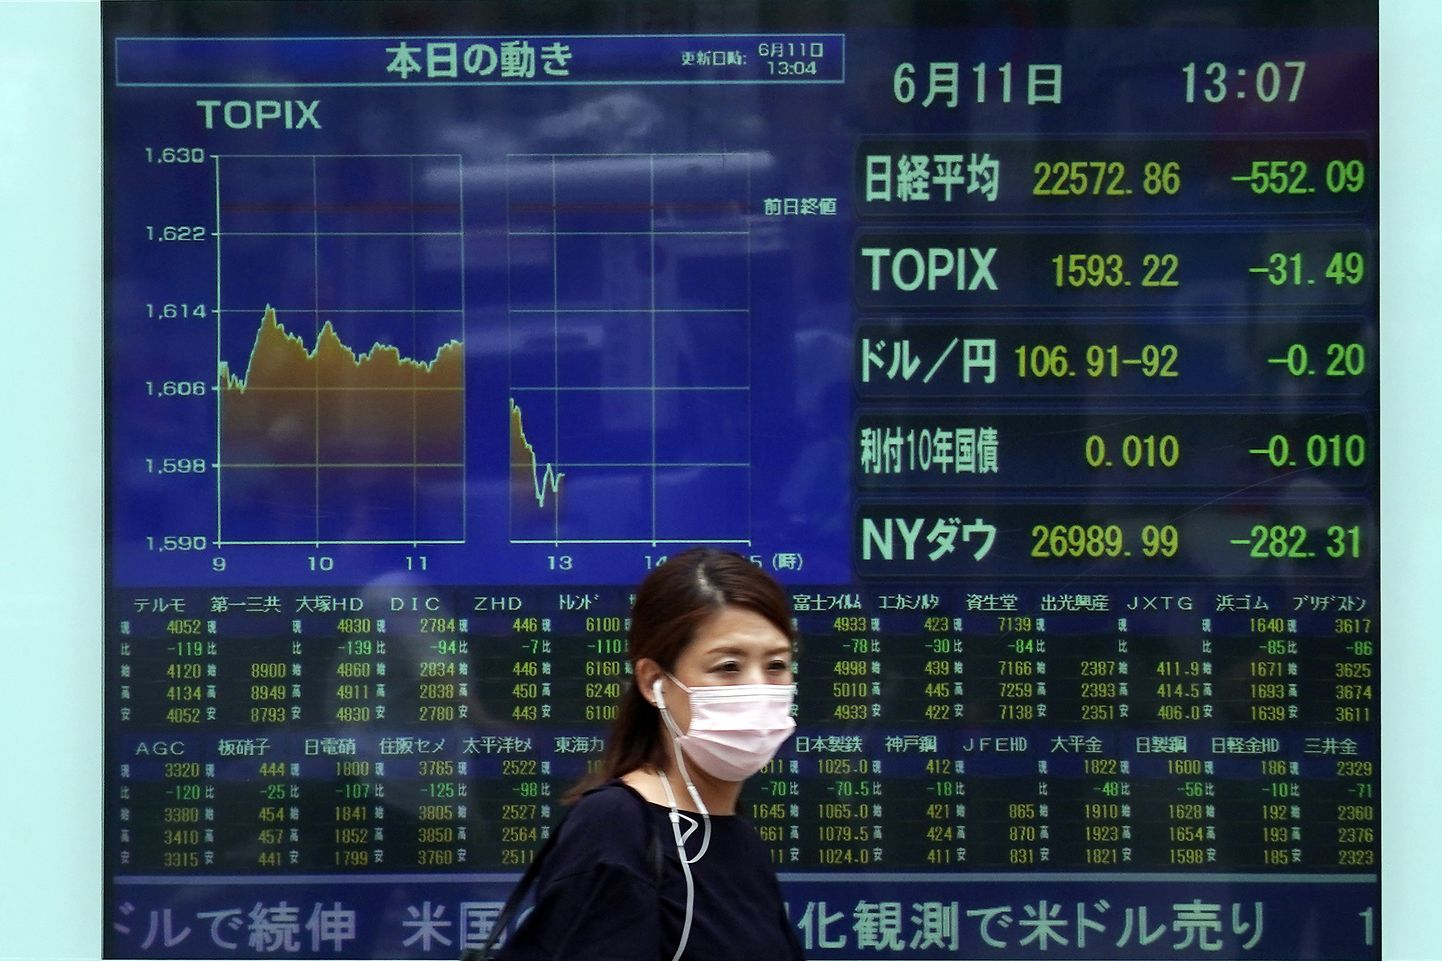 Tokyo börs on suuruselt kolmas börs maailmas. Foto on illustratiivne.